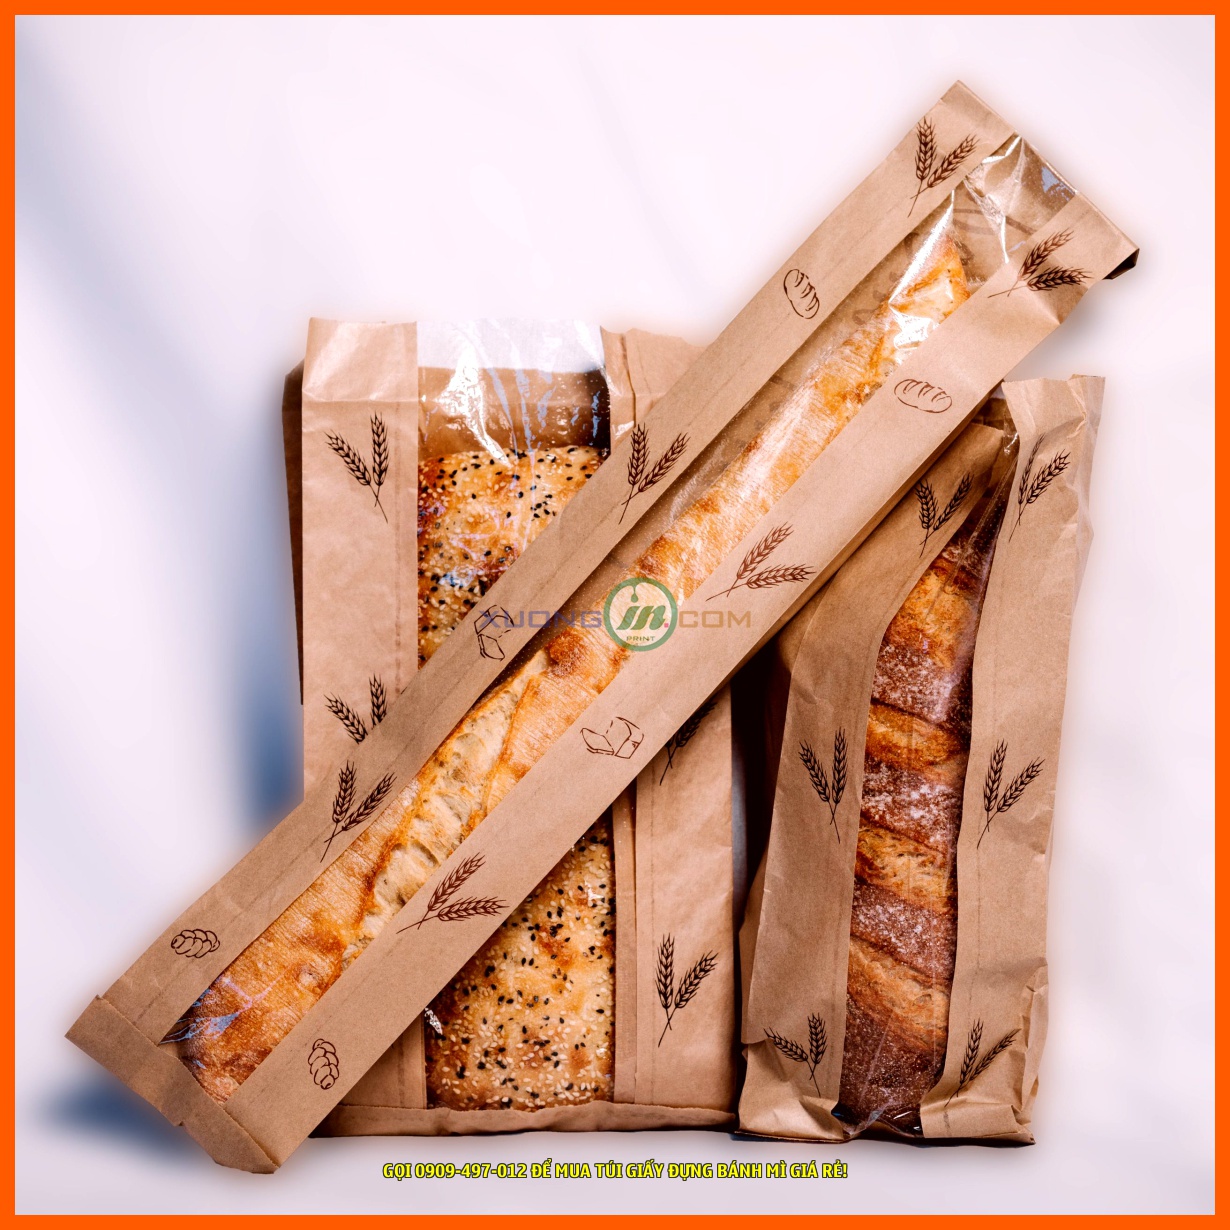 Huy Phát Recycle là địa chỉ uy tín để bạn mua túi giấy đựng bánh mì giá rẻ tại TpHCM.